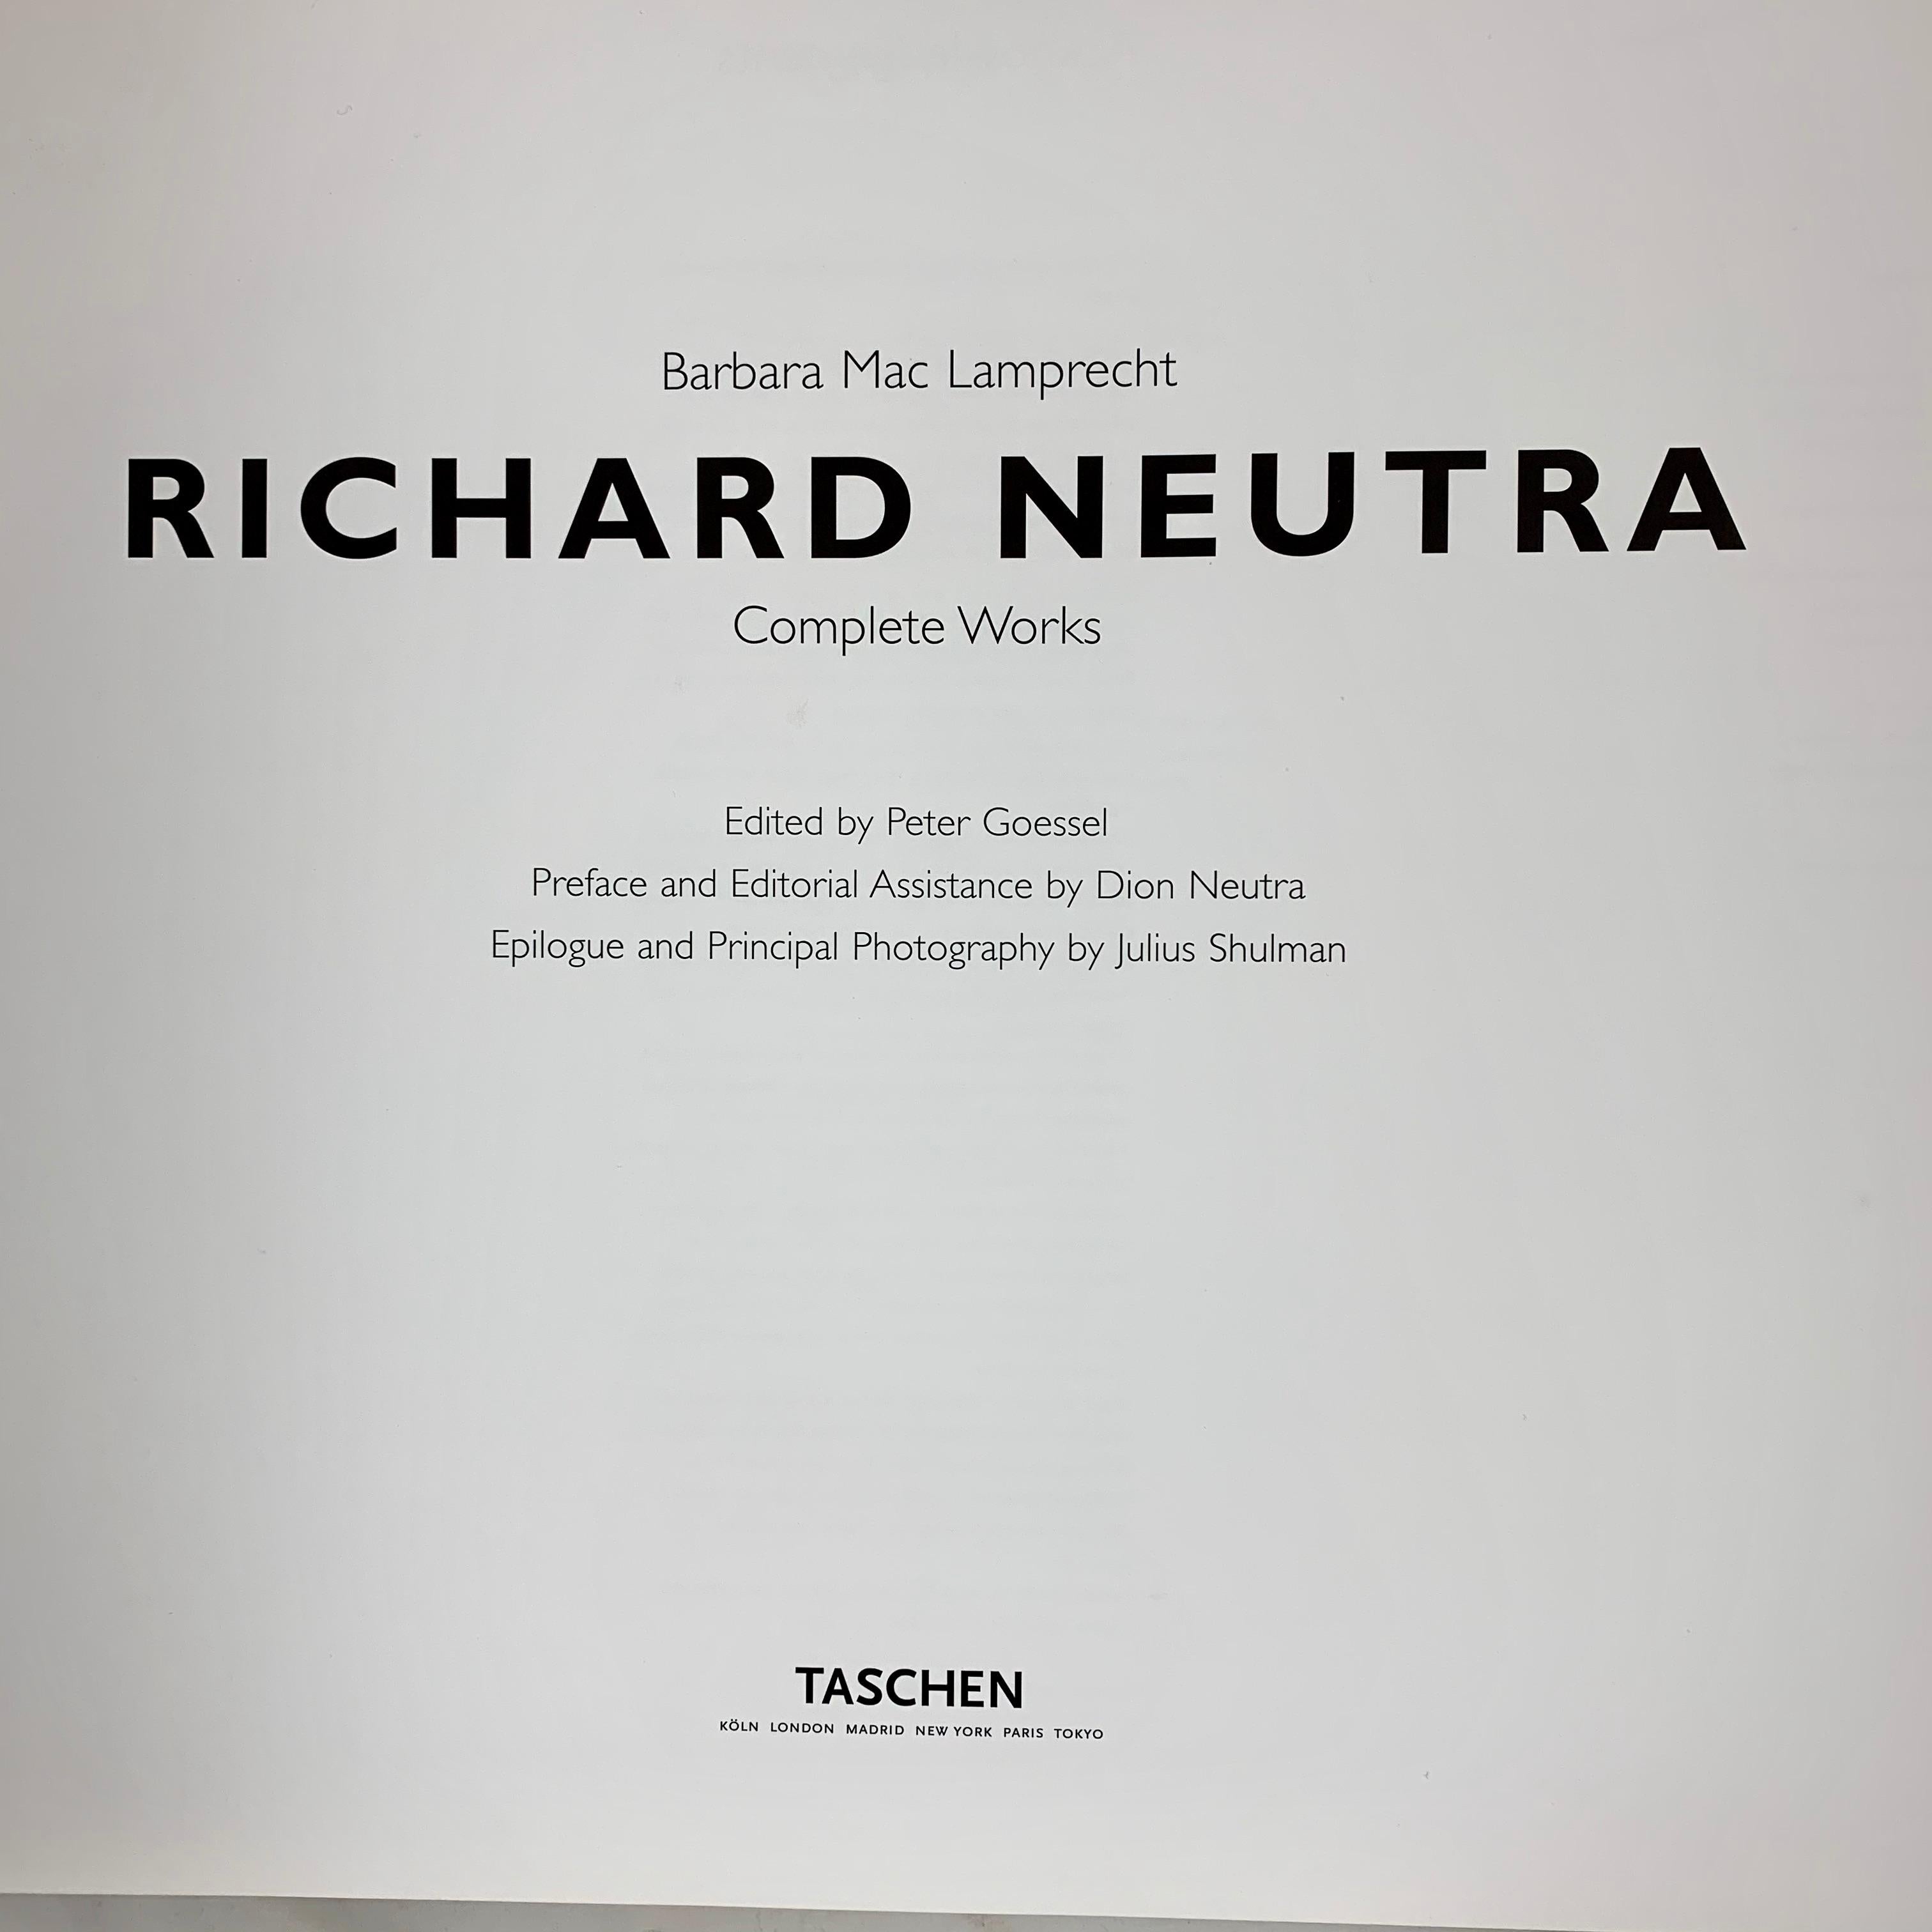 richard neutra books